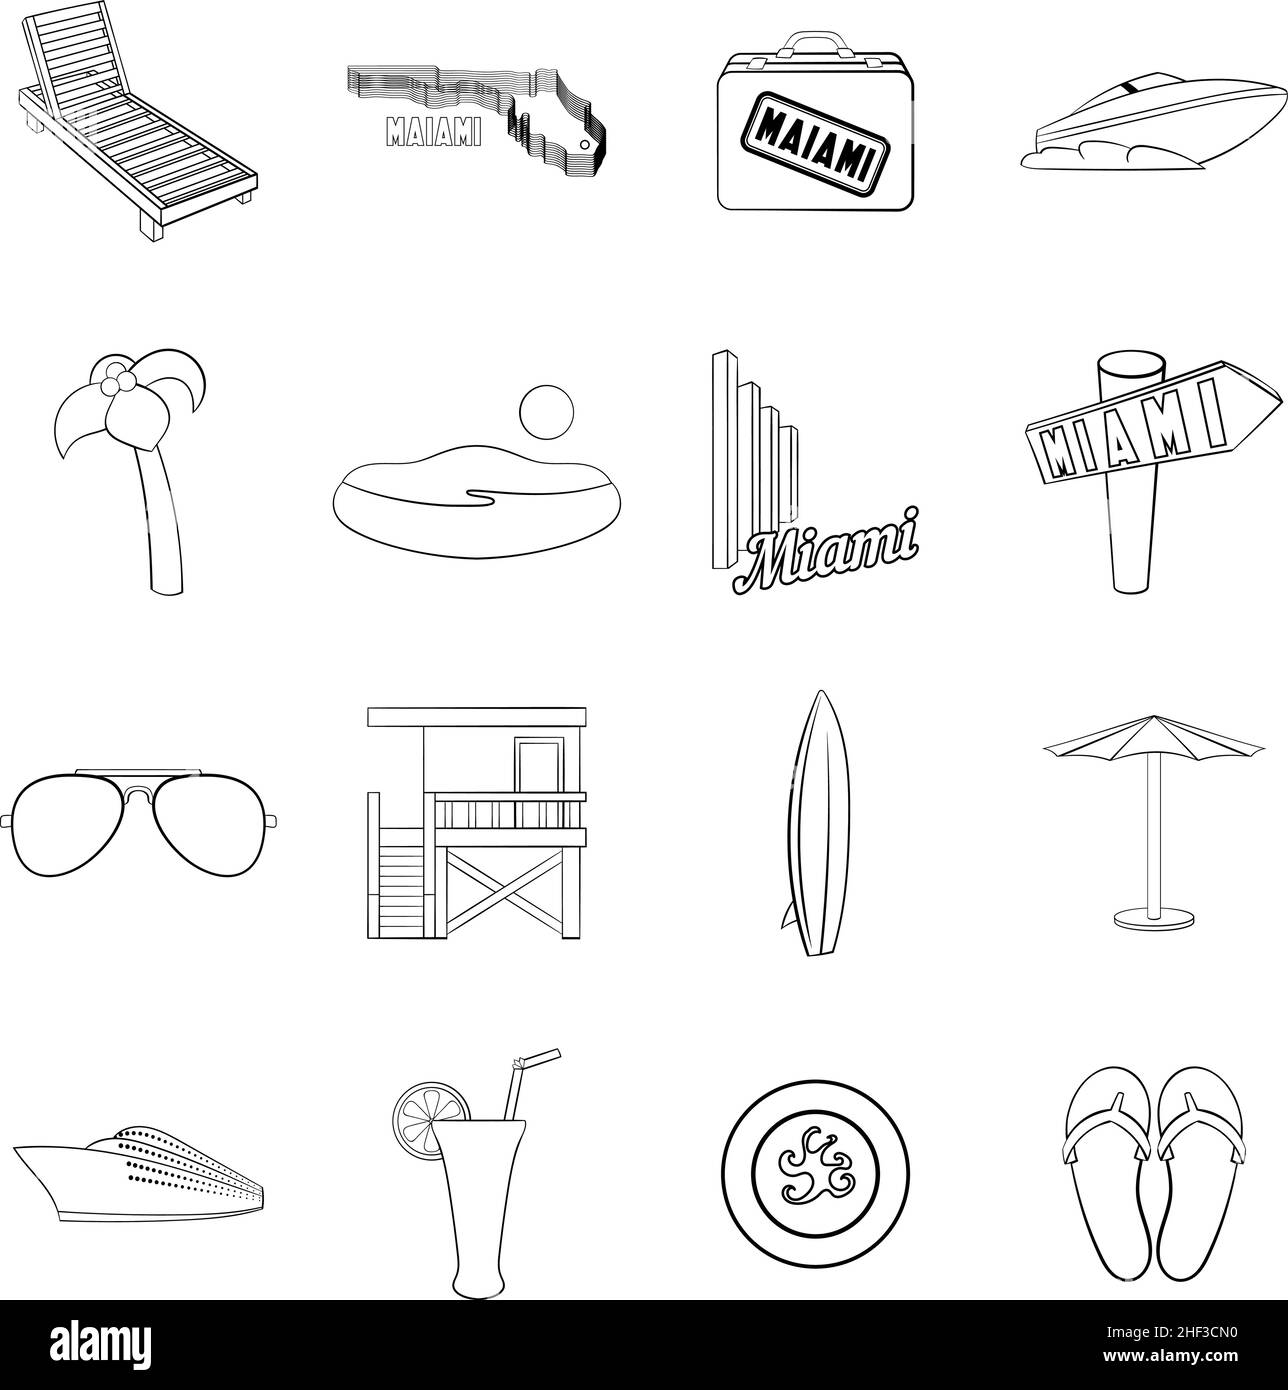 Miami affiche des icônes de style contour isolées sur fond blanc Illustration de Vecteur